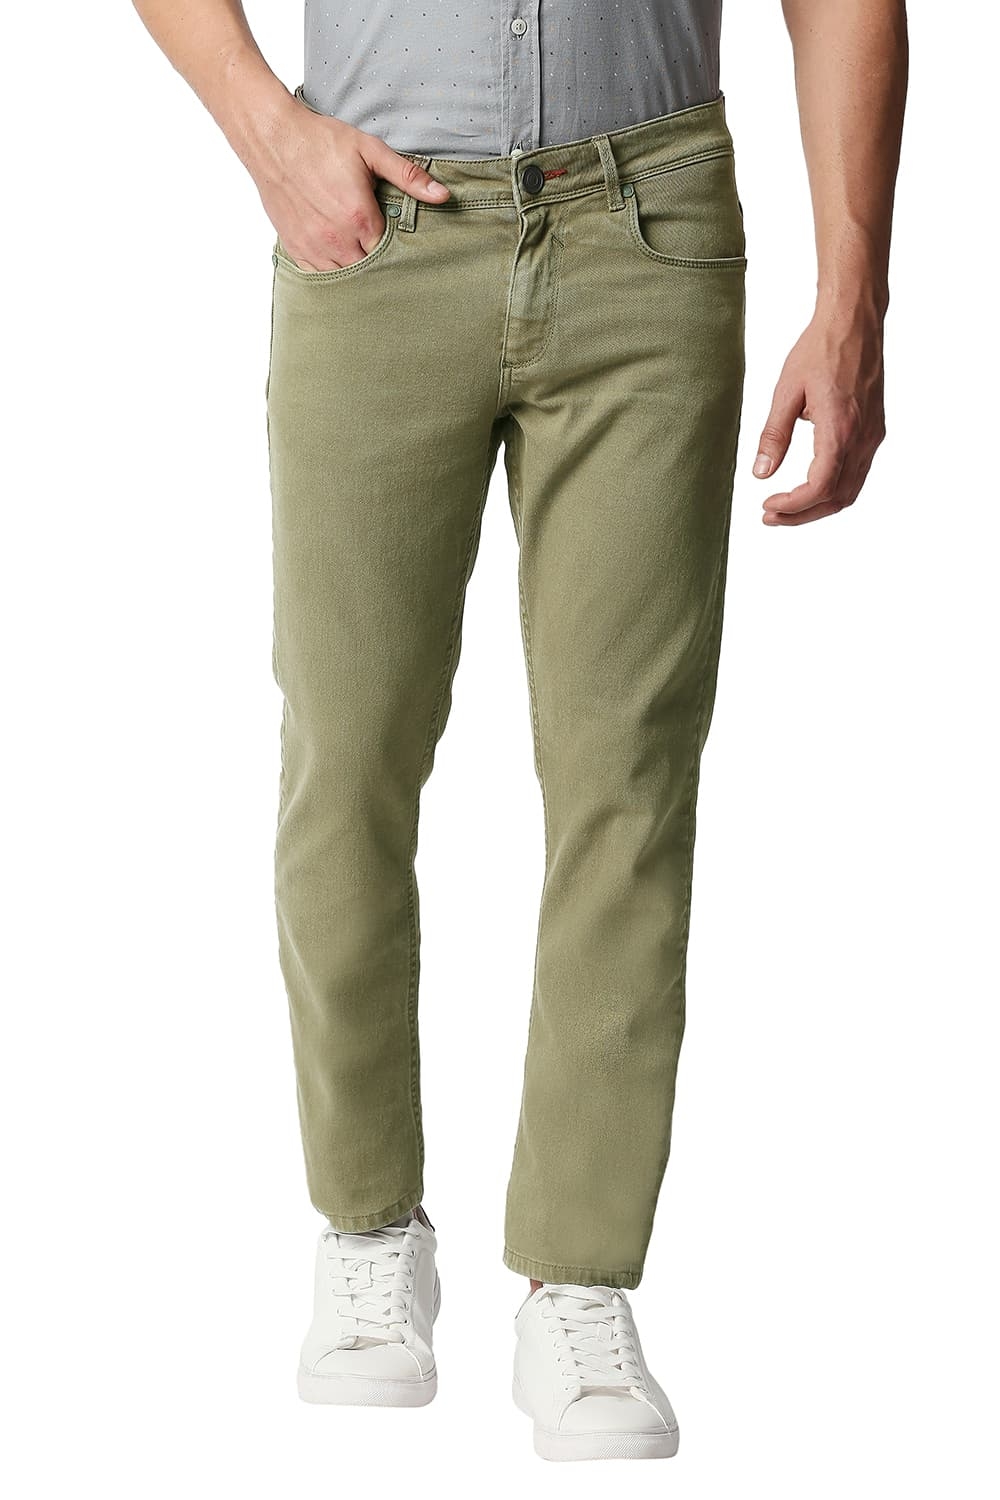 Basics | Men's Olive Cotton Blend Solid Jeans 0